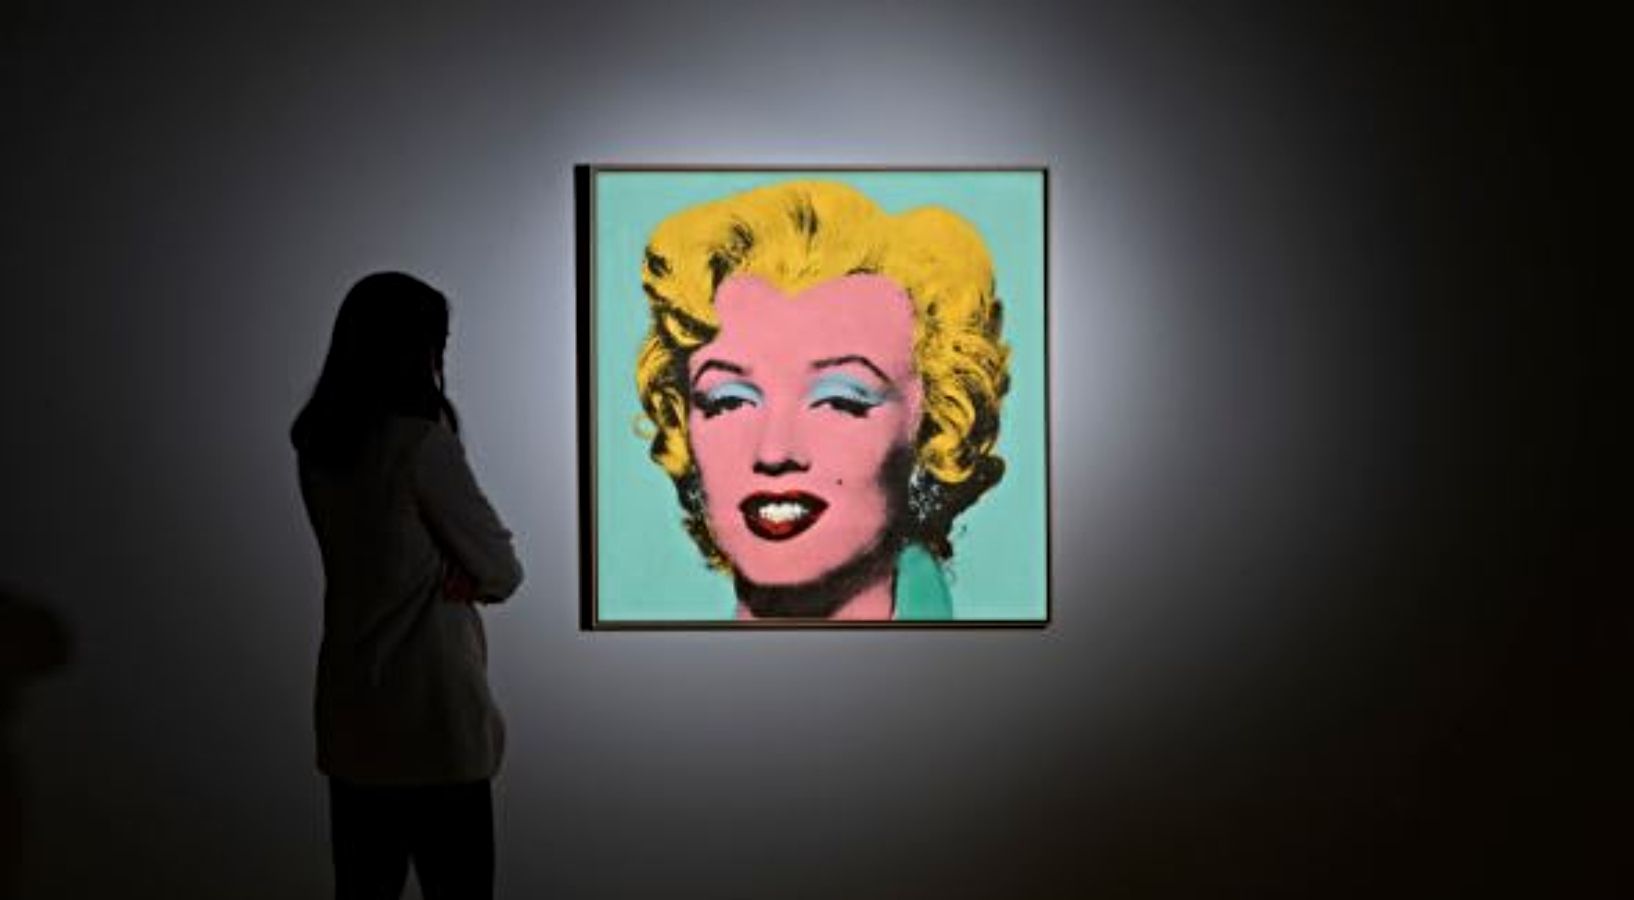 Un retrato de Marilyn Monroe de Warhol se convierte en la obra más cara del siglo XX